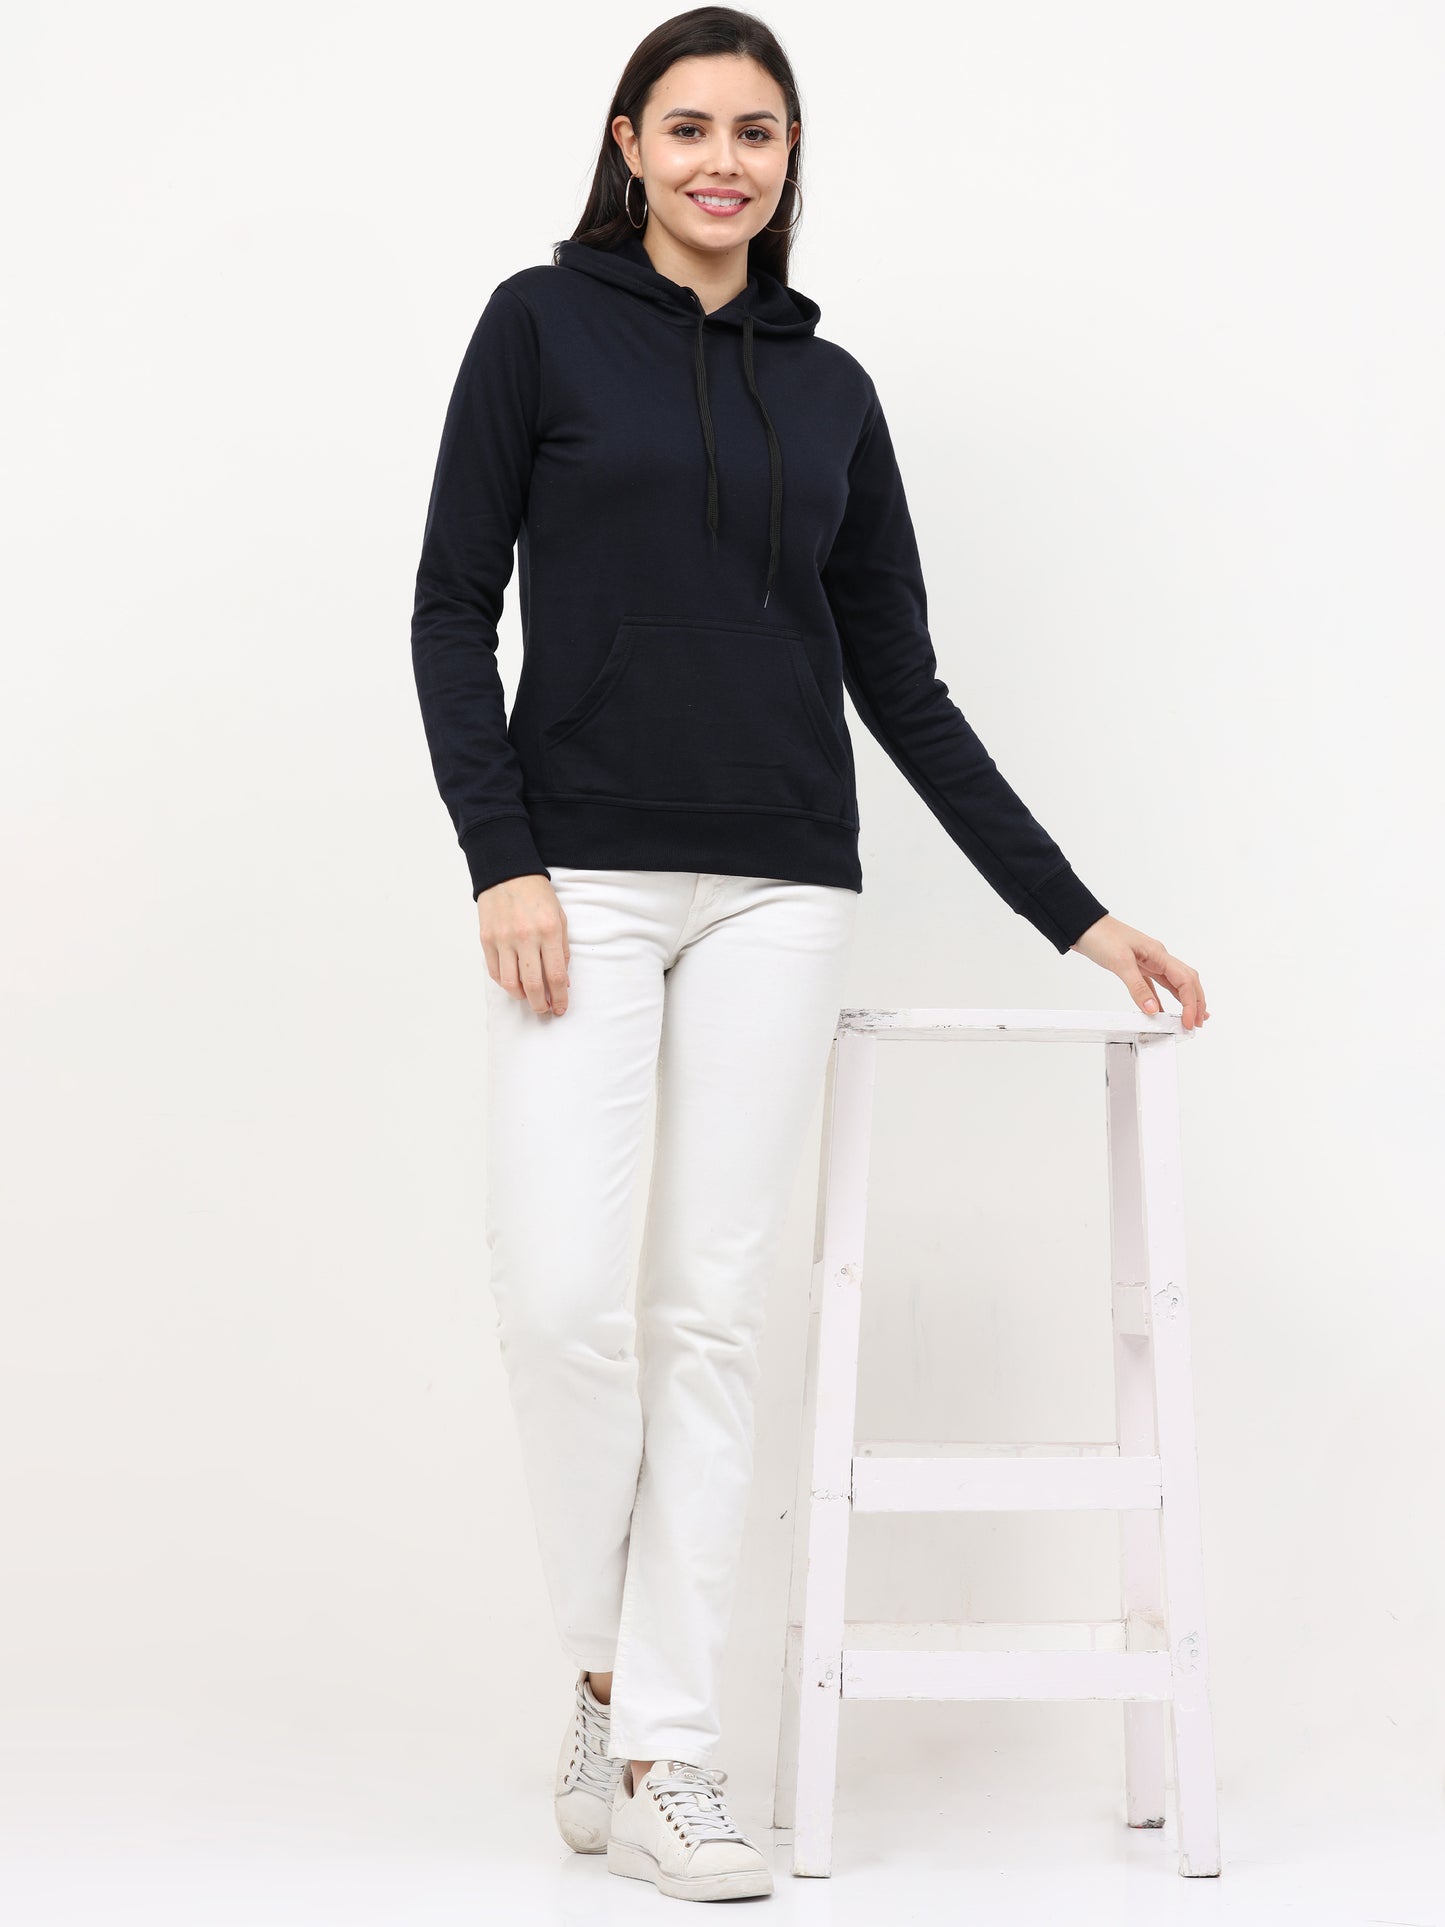 Women's Cotton Plain Navy Blue Color Sweatshirt Hoodies